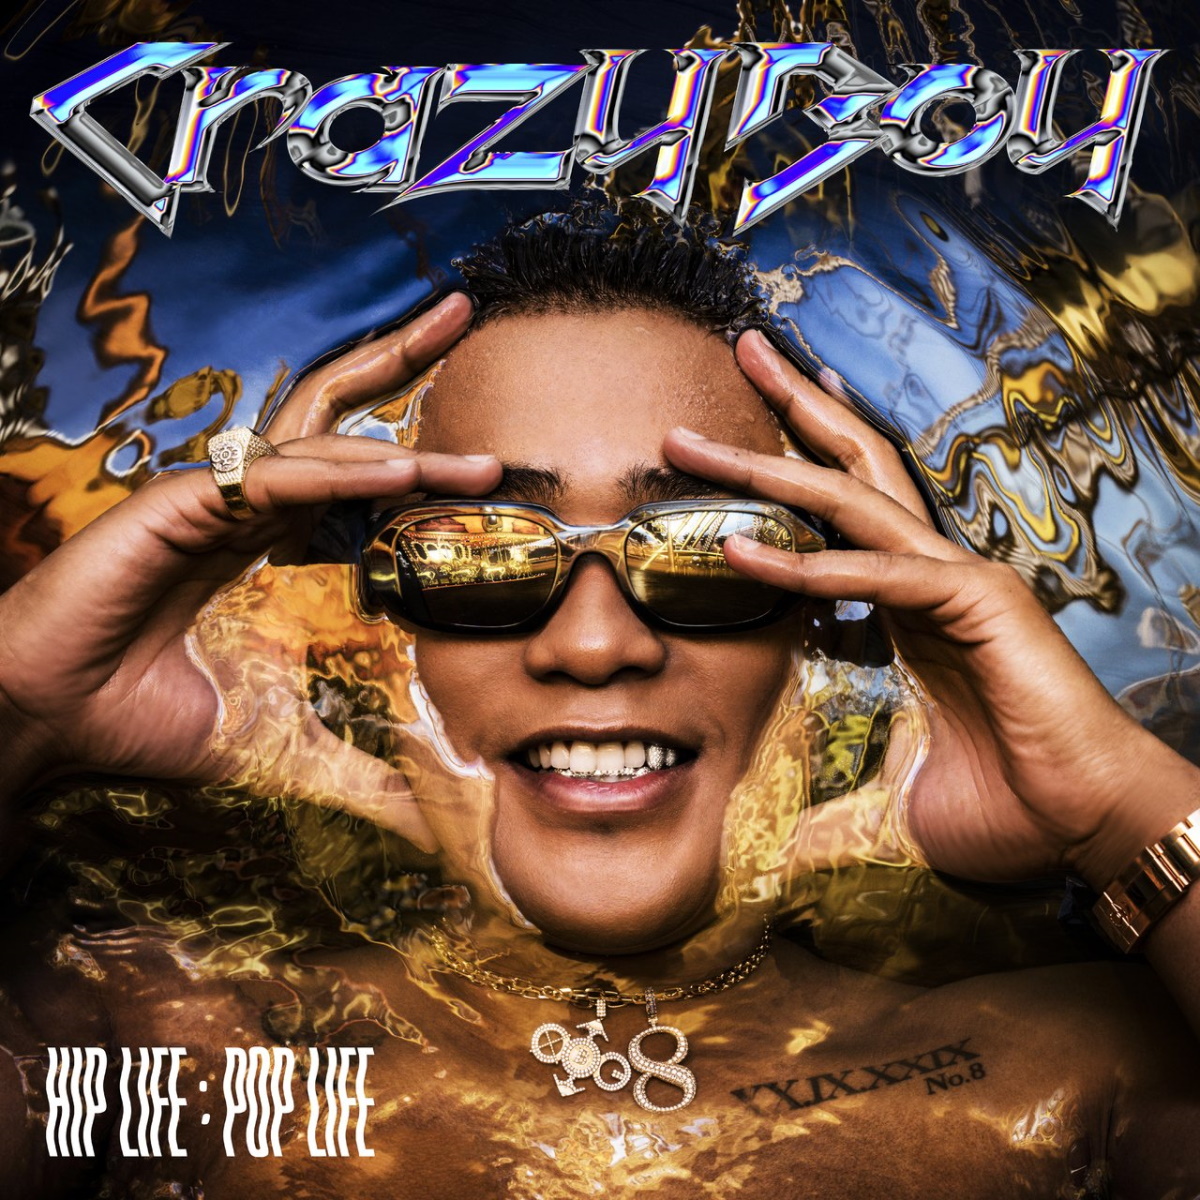 『CrazyBoy - IDGAF 歌詞』収録の『HIP LIFE：POP LIFE』ジャケット